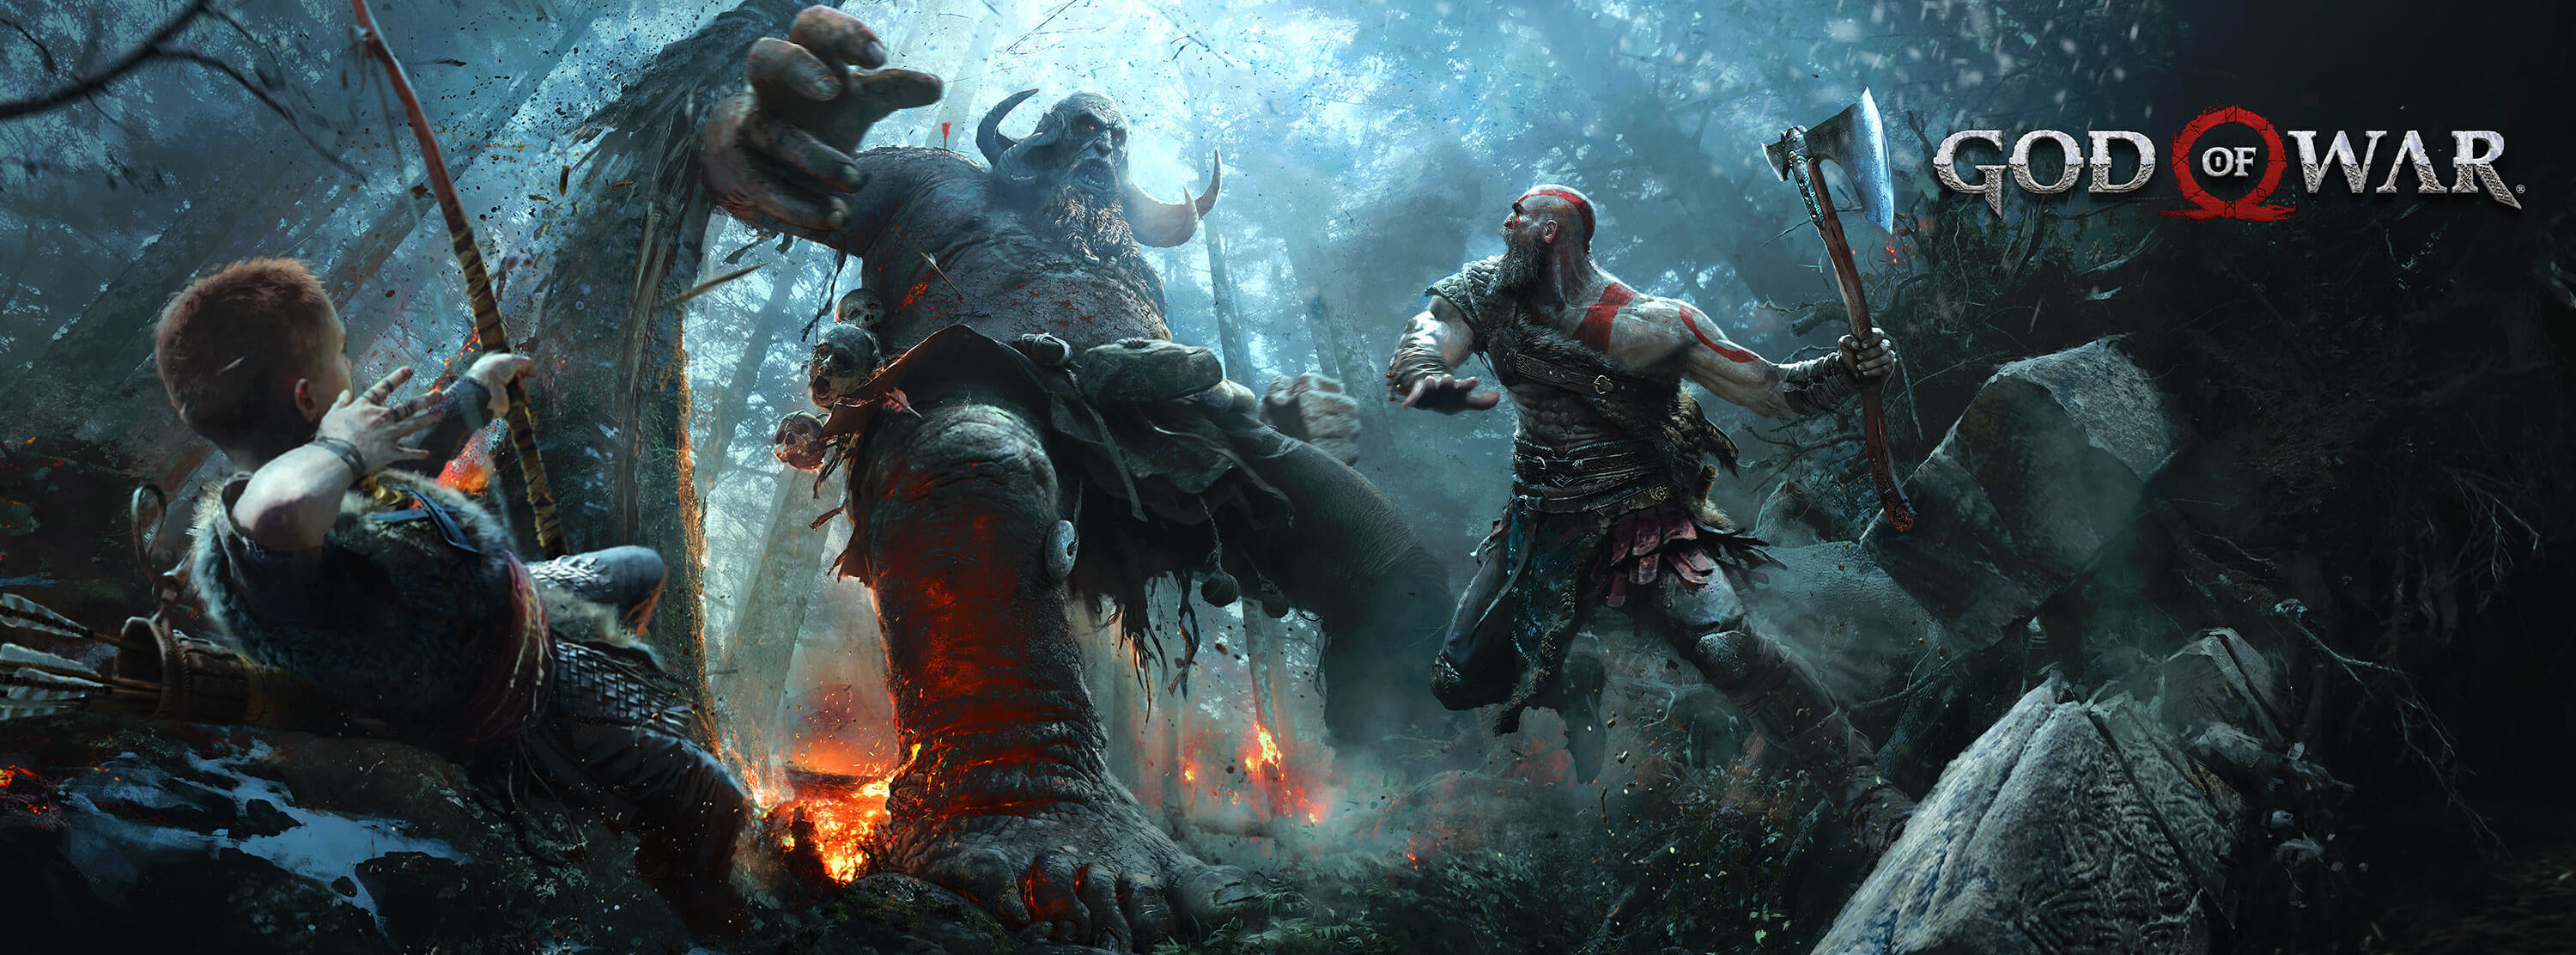 3000x1112 Video Game - God of War (2018) Kratos (God Of War) Wallpaper